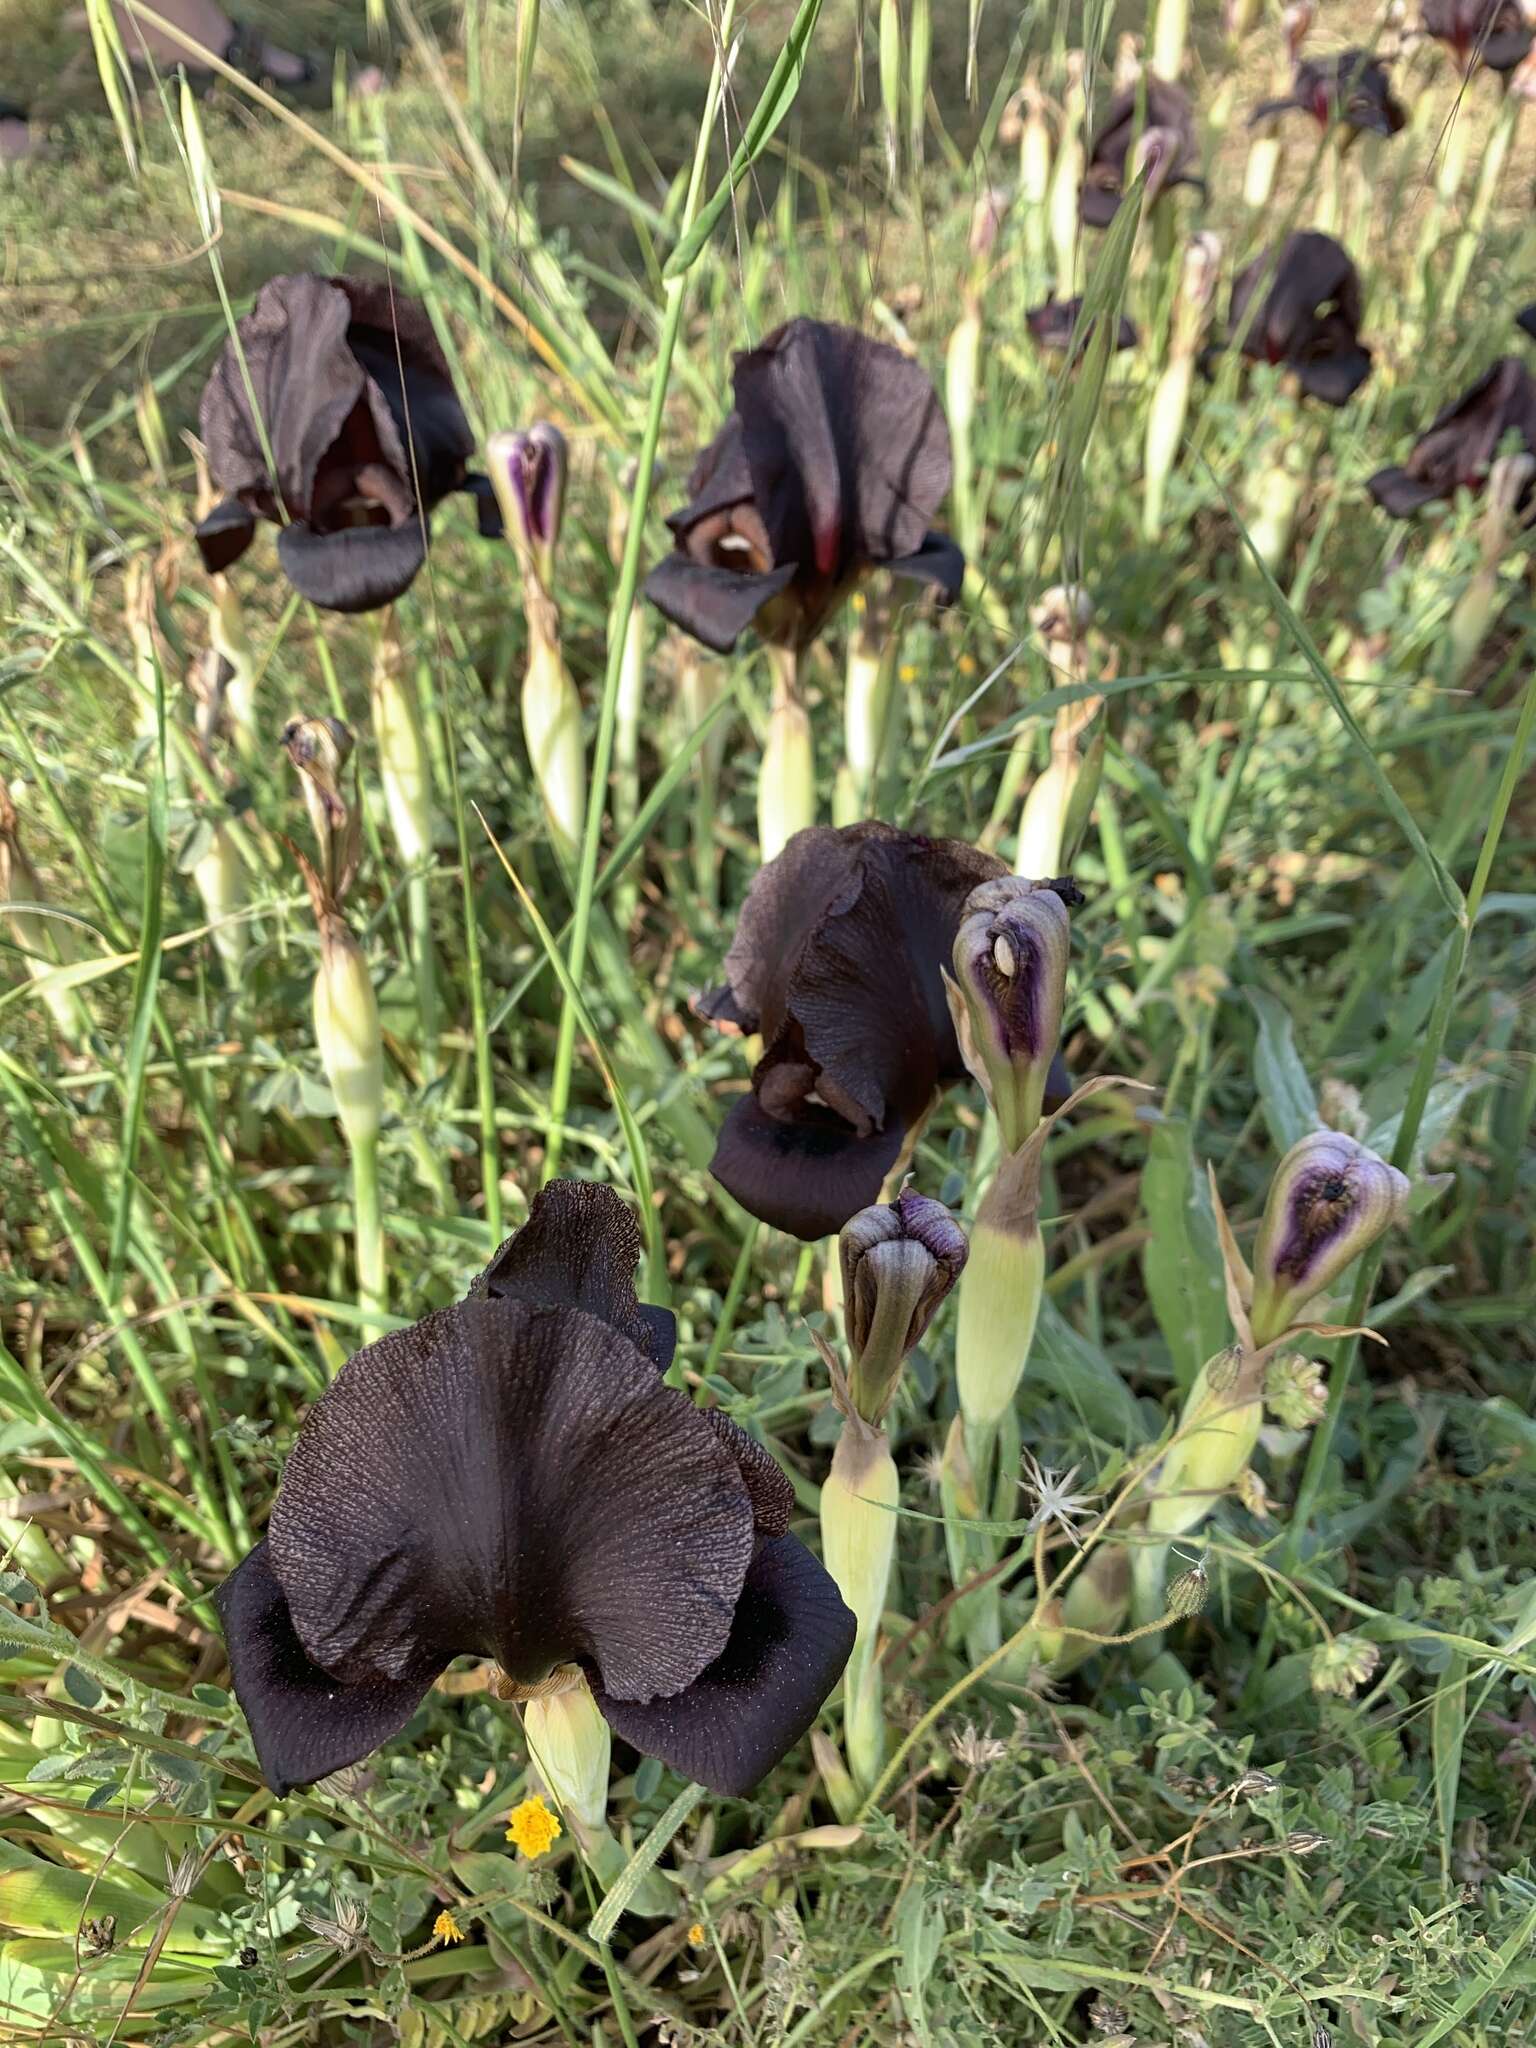 Image of Black Iris